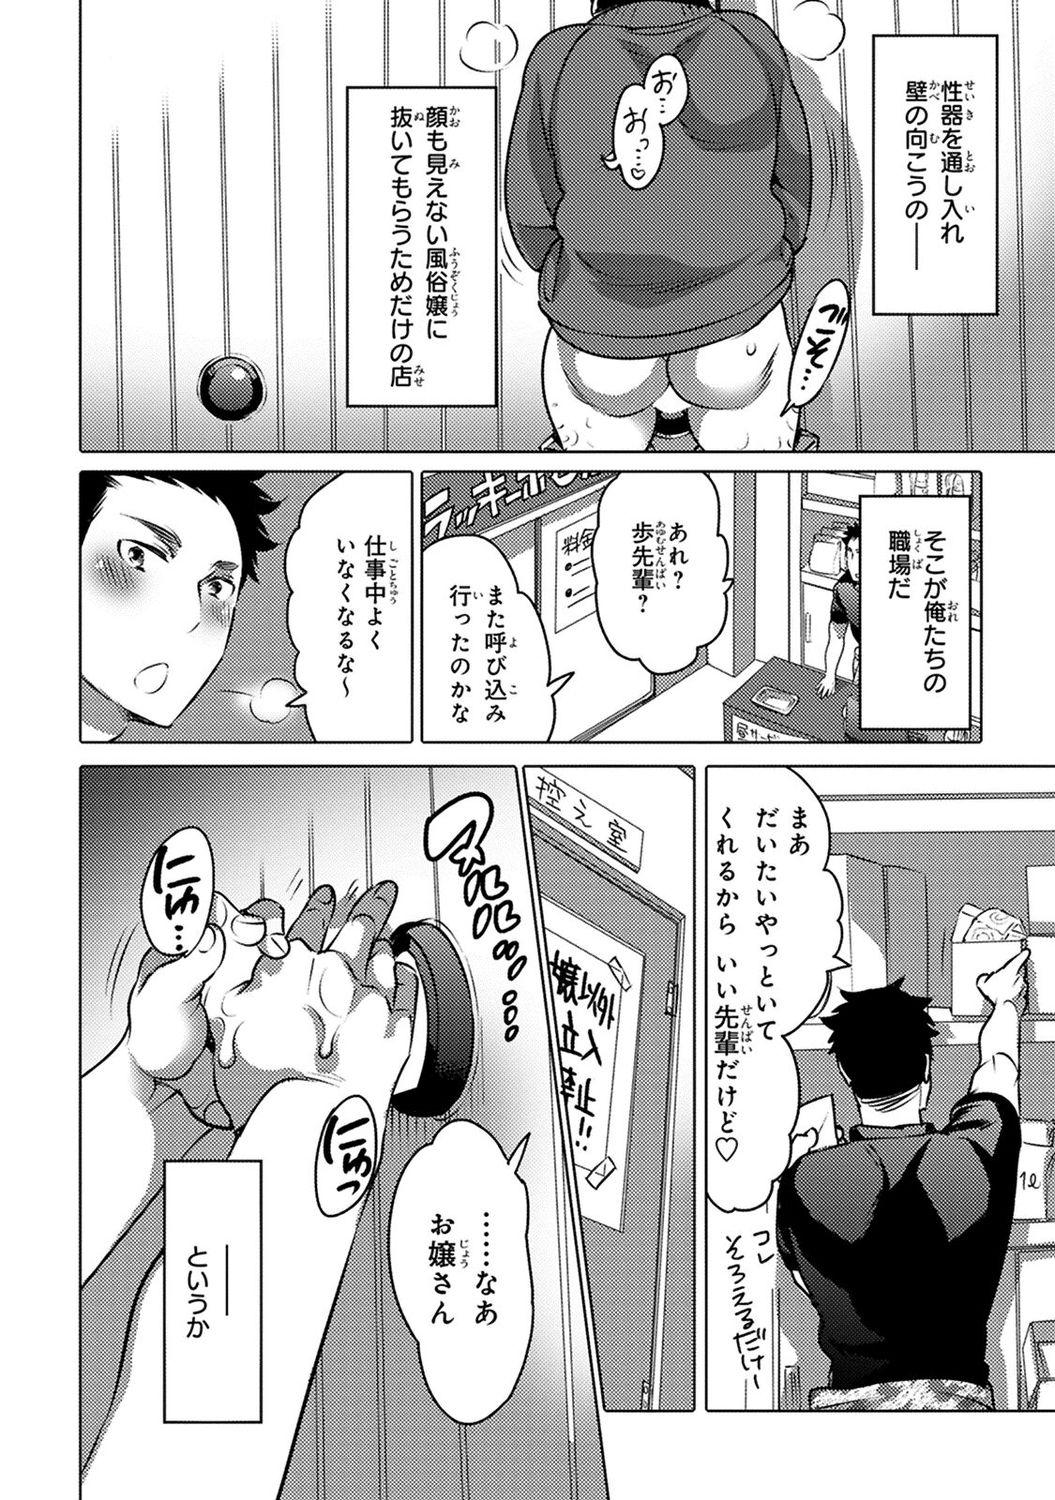 4some Aiyoku Lucky Hall Rebolando - Page 8